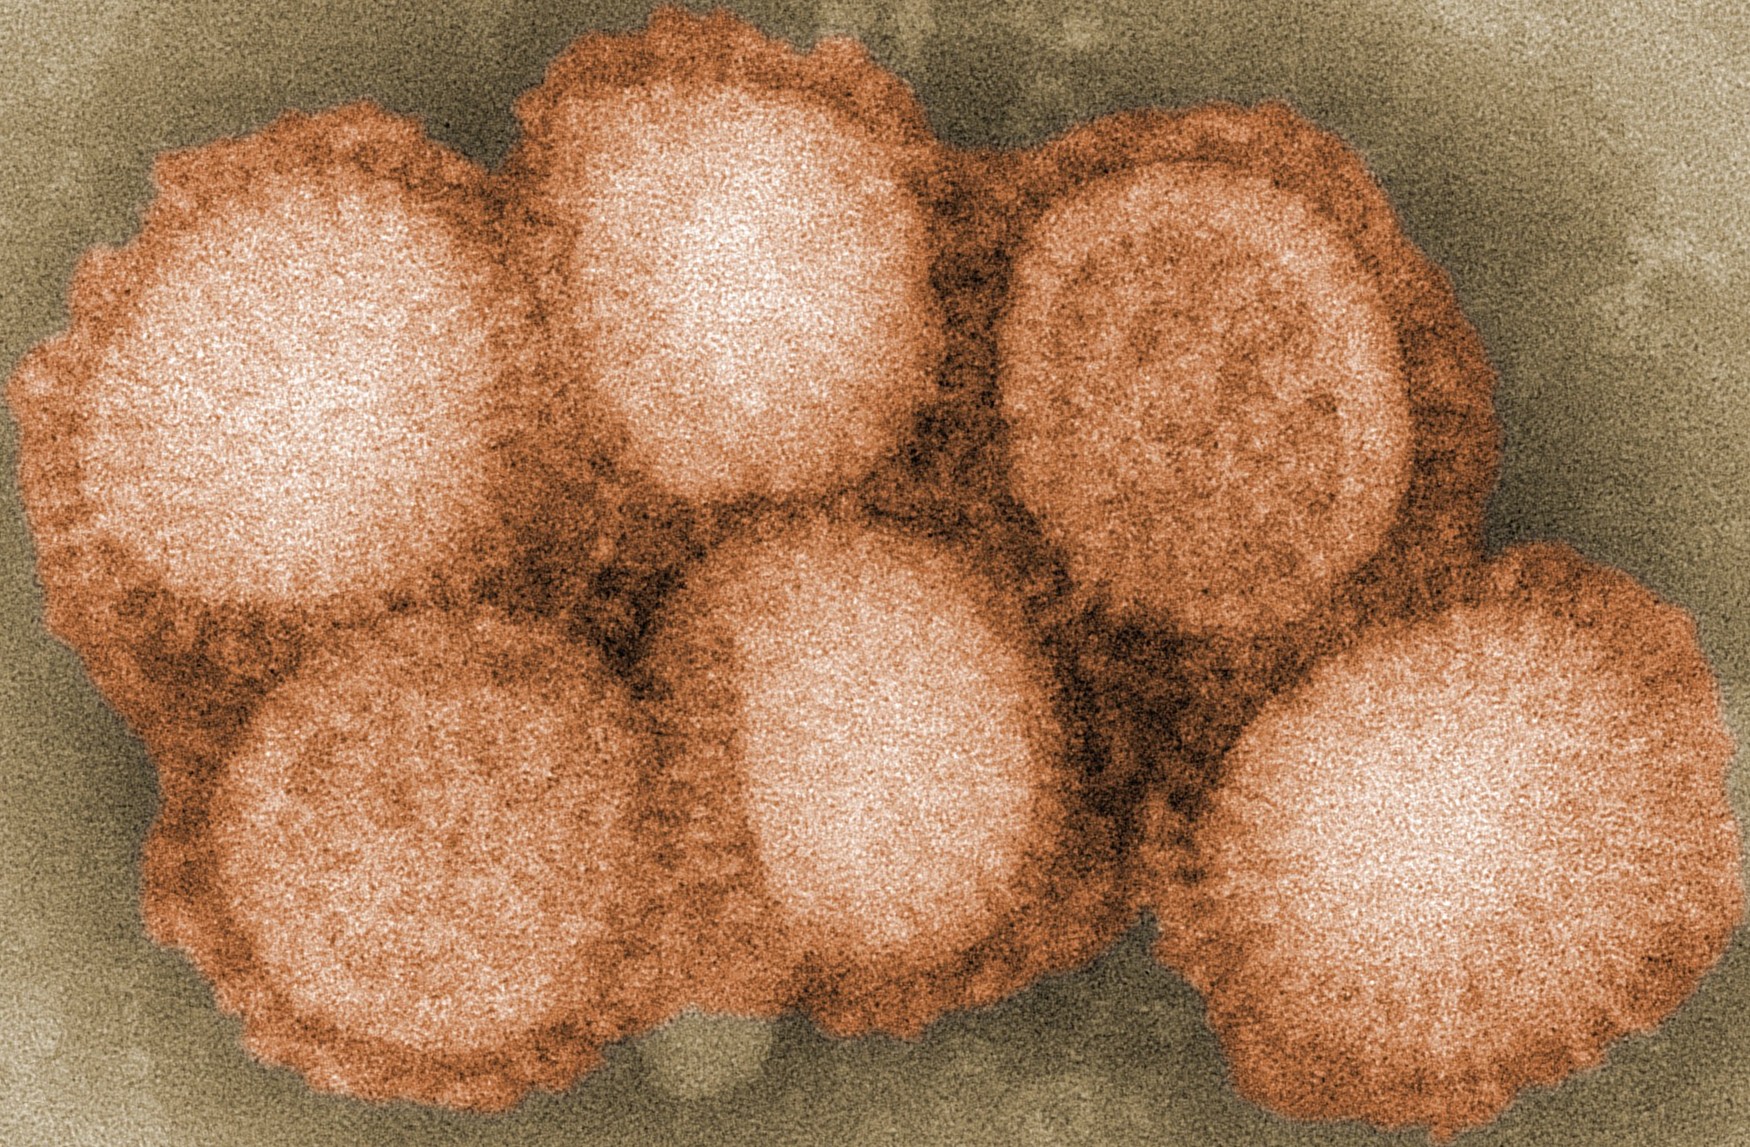 H1N1 virus microscopic look